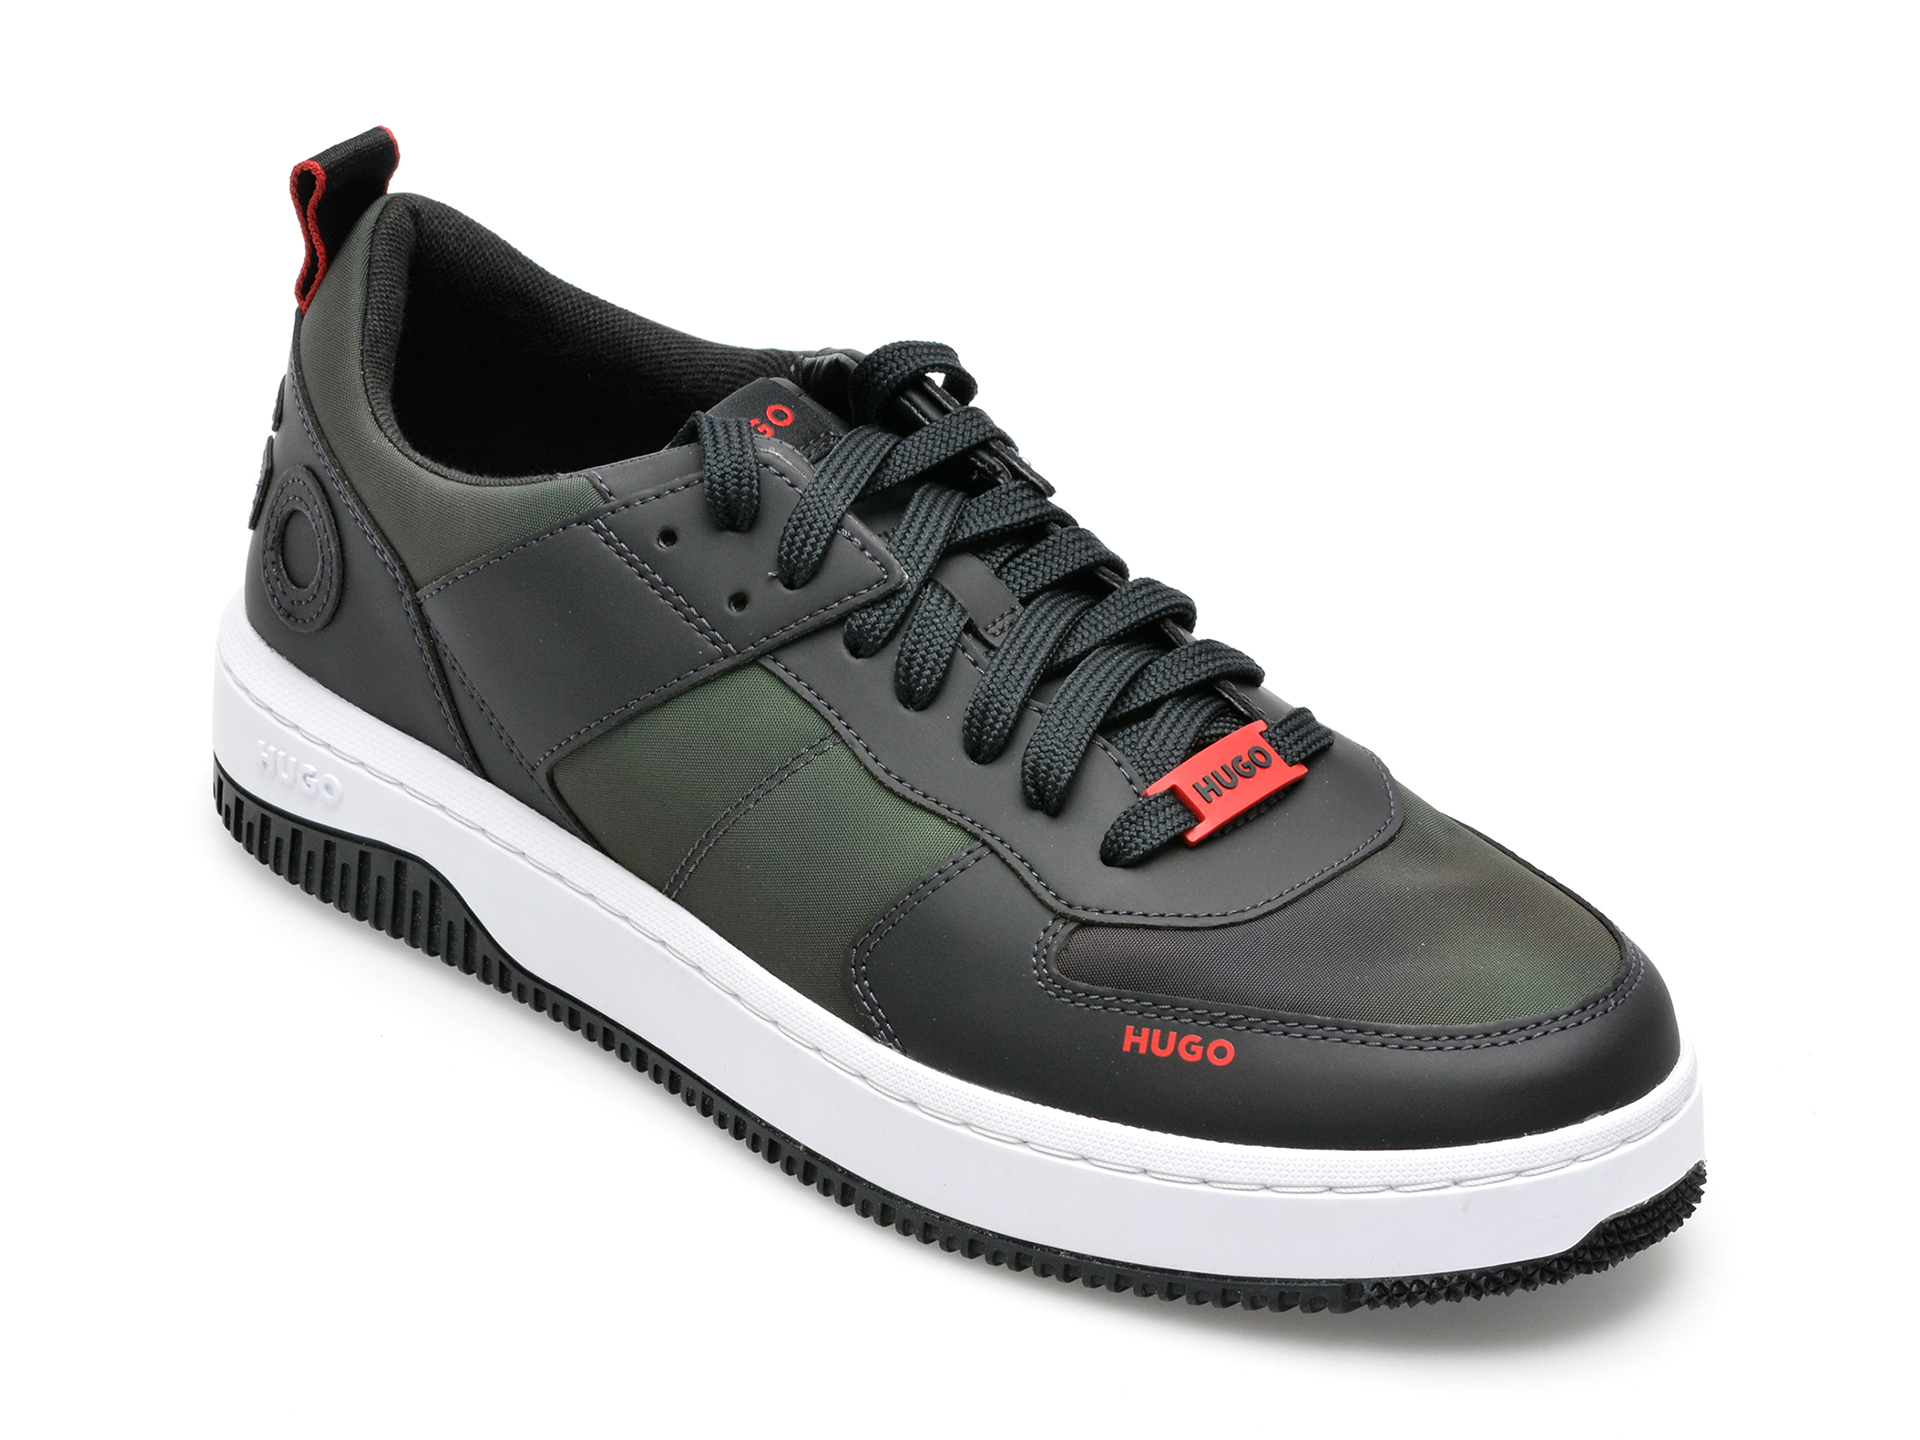 Pantofi sport HUGO kaki, 3118, din material textil BARBATI 2023-06-08